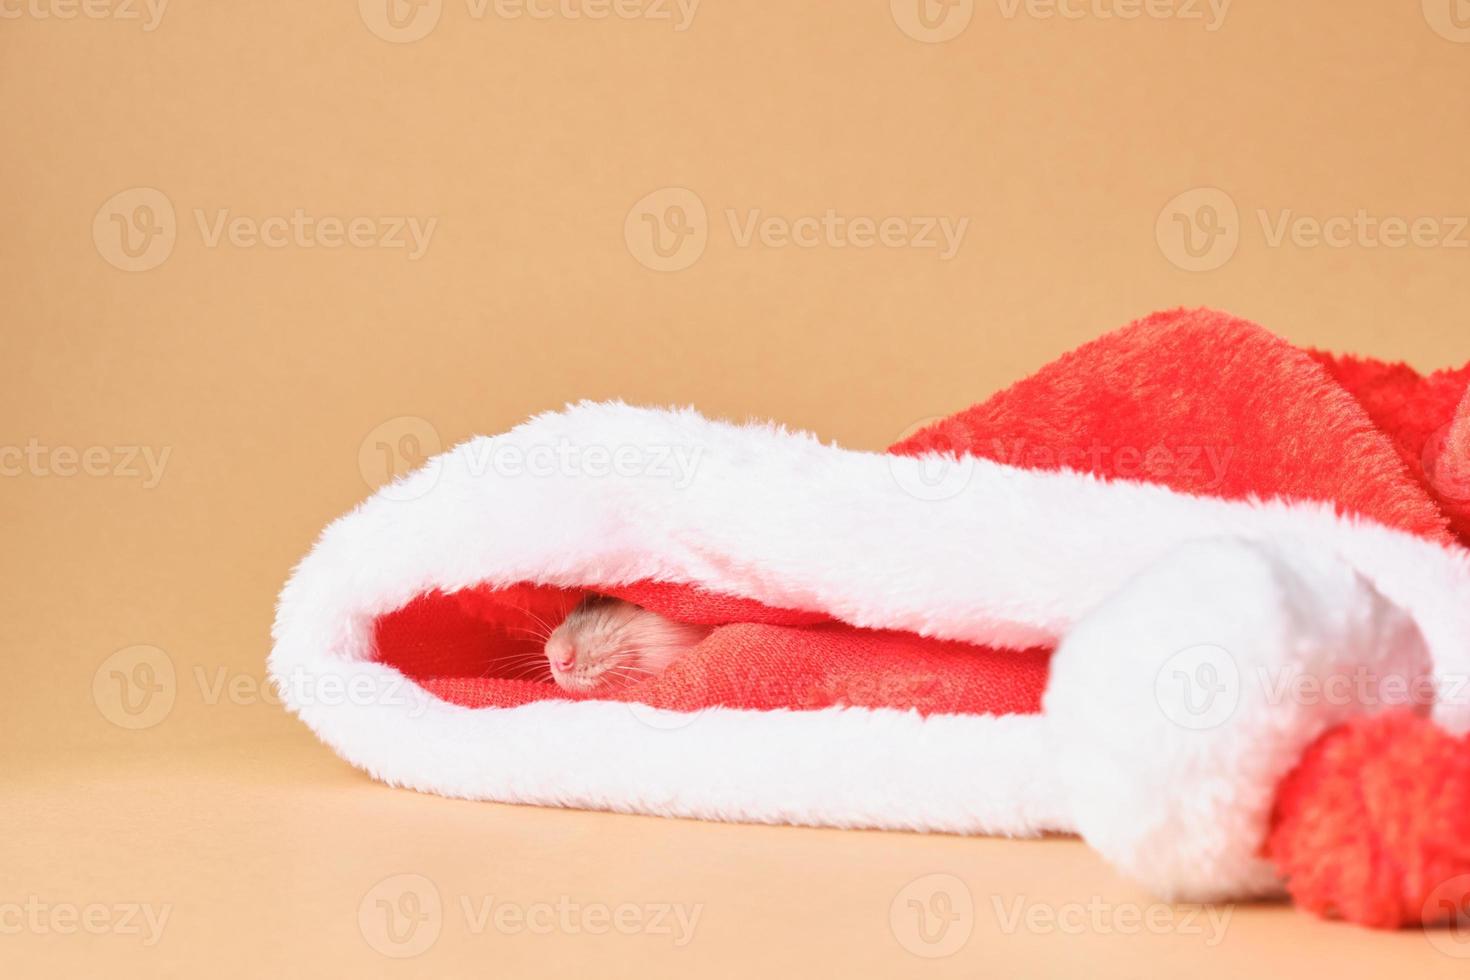 carino ratto nel Santa cappello su beige sfondo foto